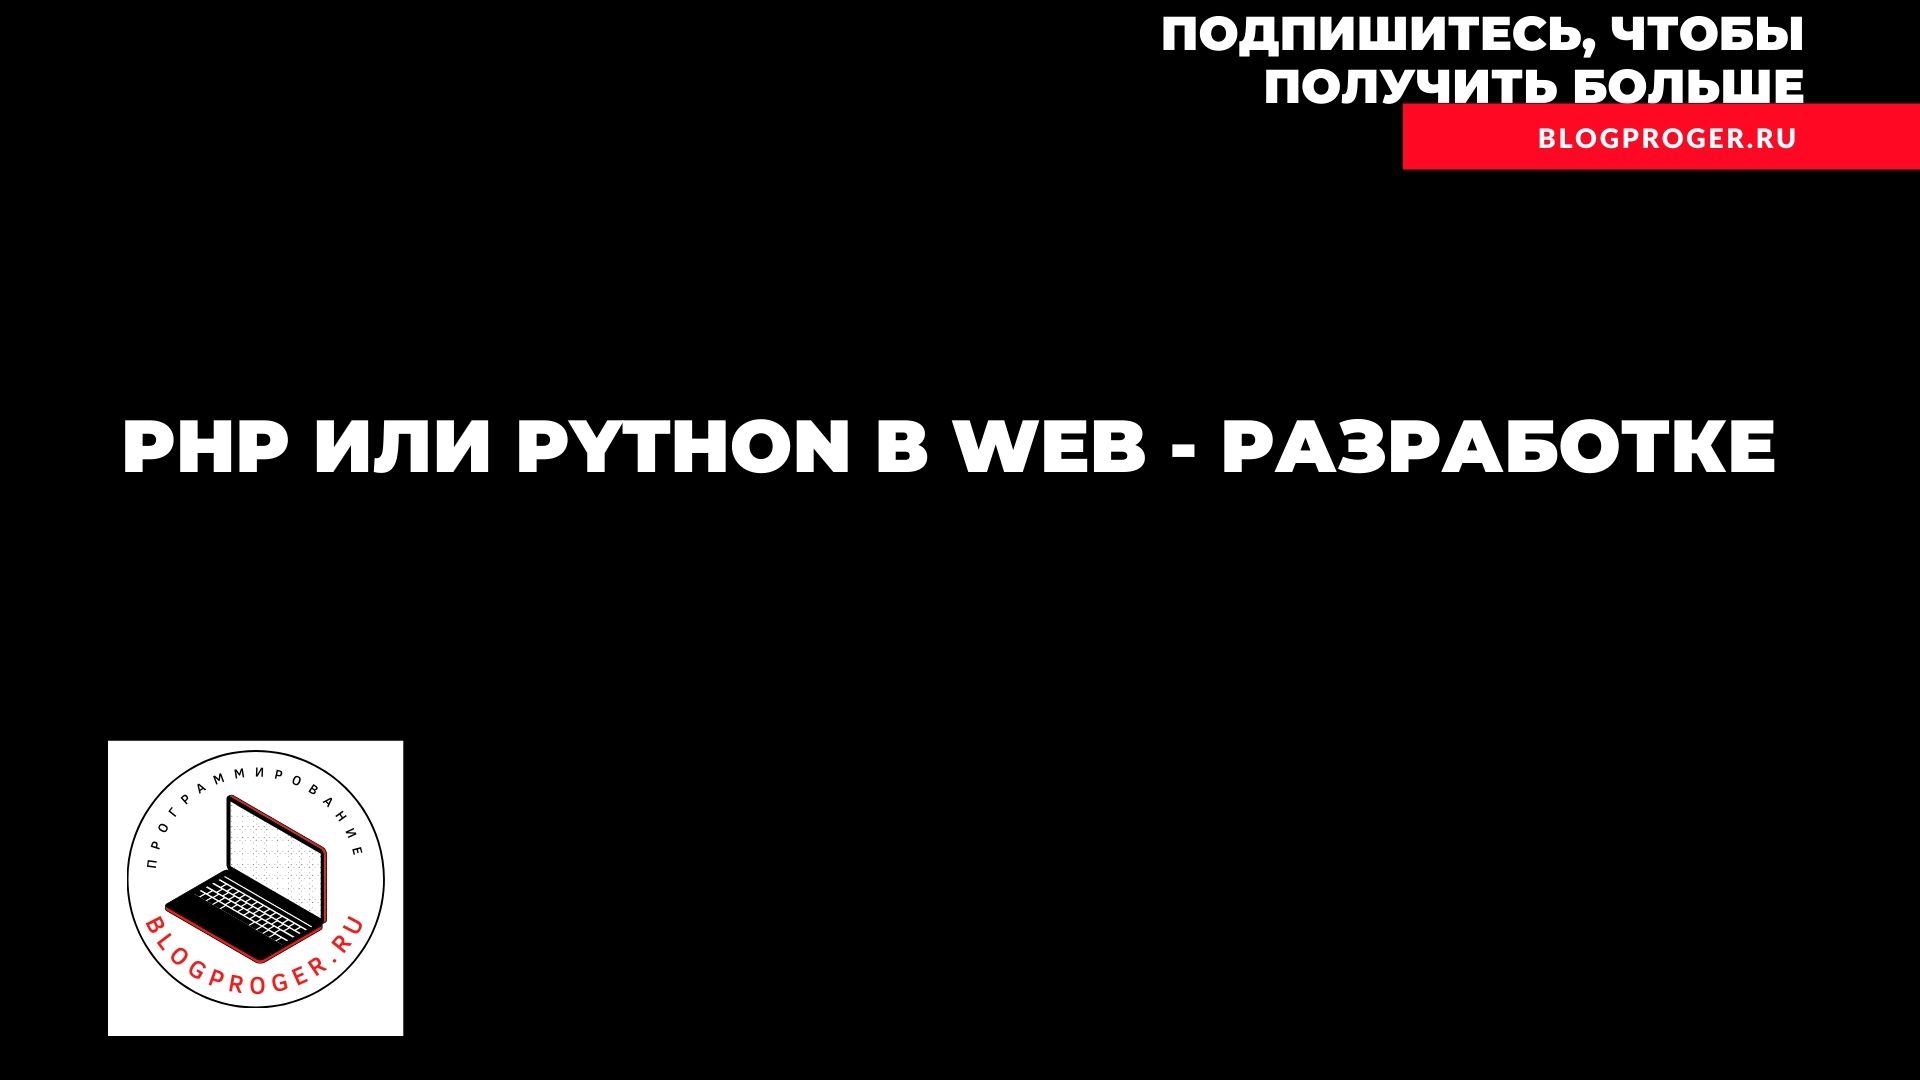 PHP или Python в web разработке